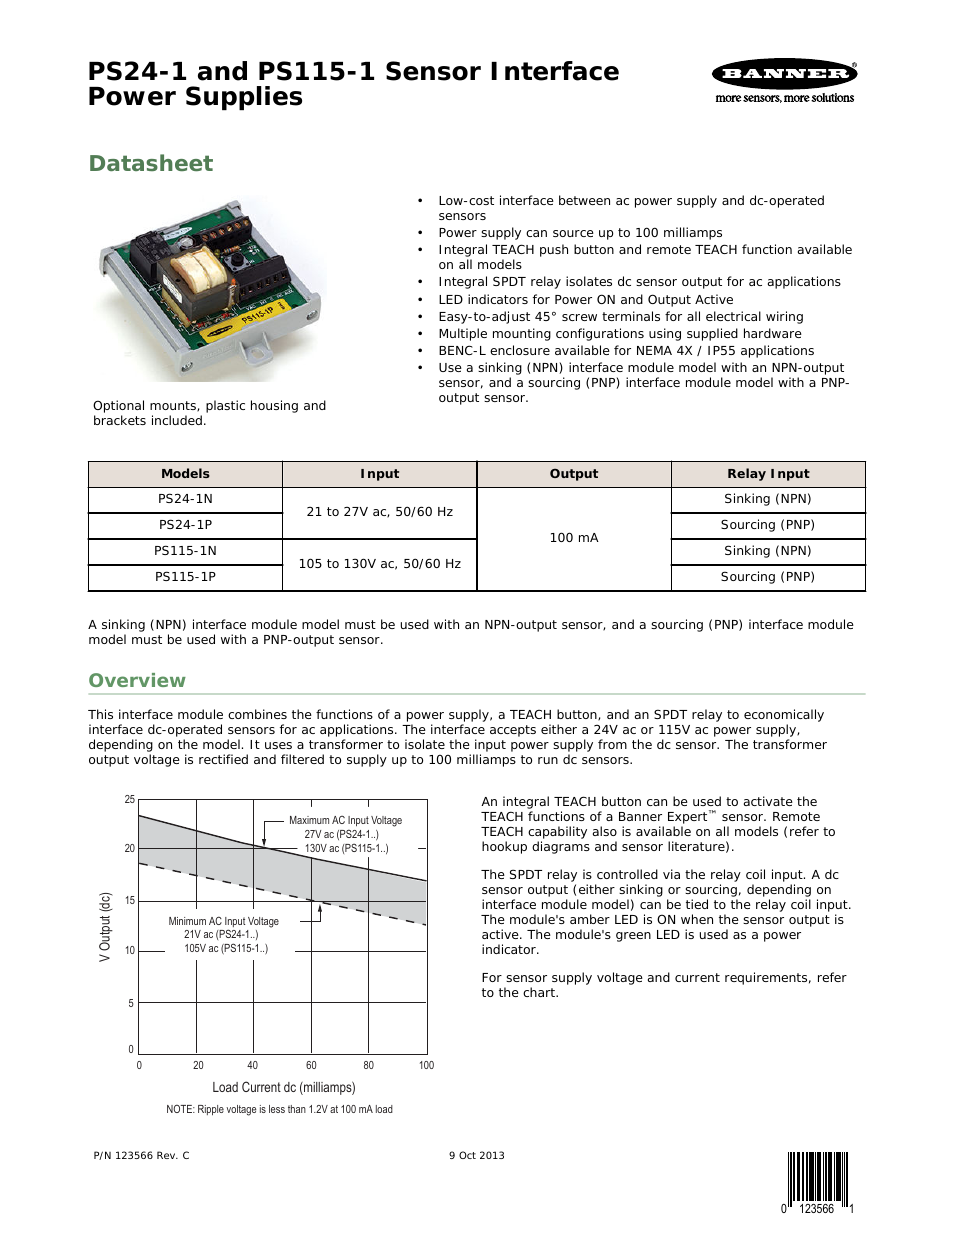 PS24-1 Sensor Interface Power Supplies